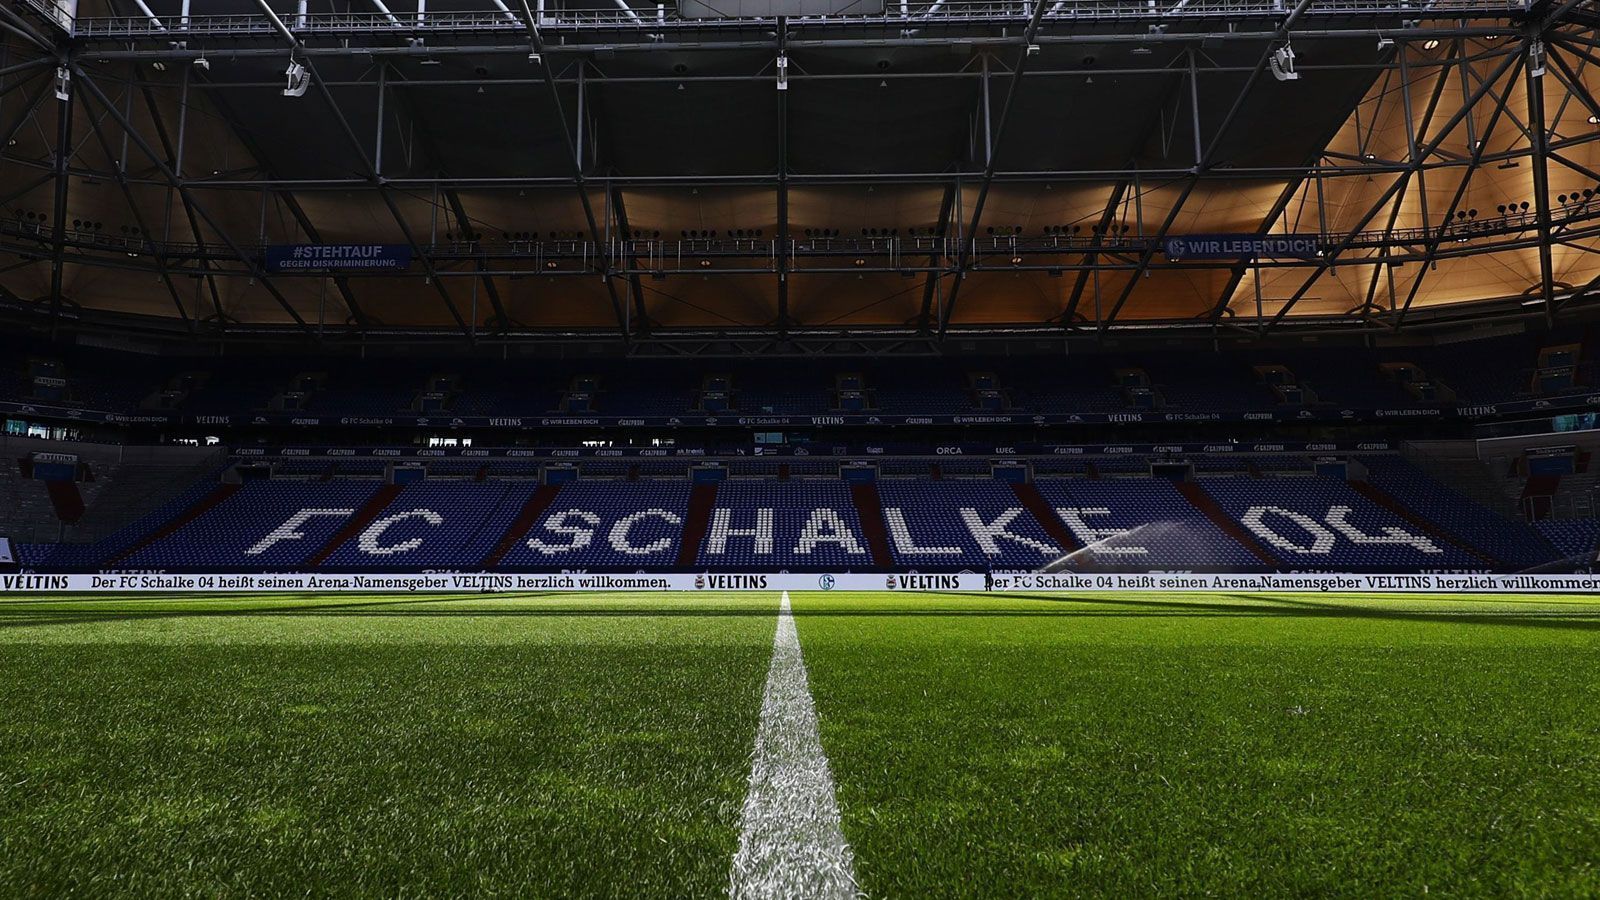 
                <strong>FC Schalke 04</strong><br>
                Stadion: Veltins-Arena (62.271 Plätze) - Zugelassene Fans am 4. Spieltag: 300* - Gegner: 1. FC Union Berlin - *Die 300 Tickets werden unter anderem an Mitarbeiter aus systemrelevanten Berufen verteilt.
              